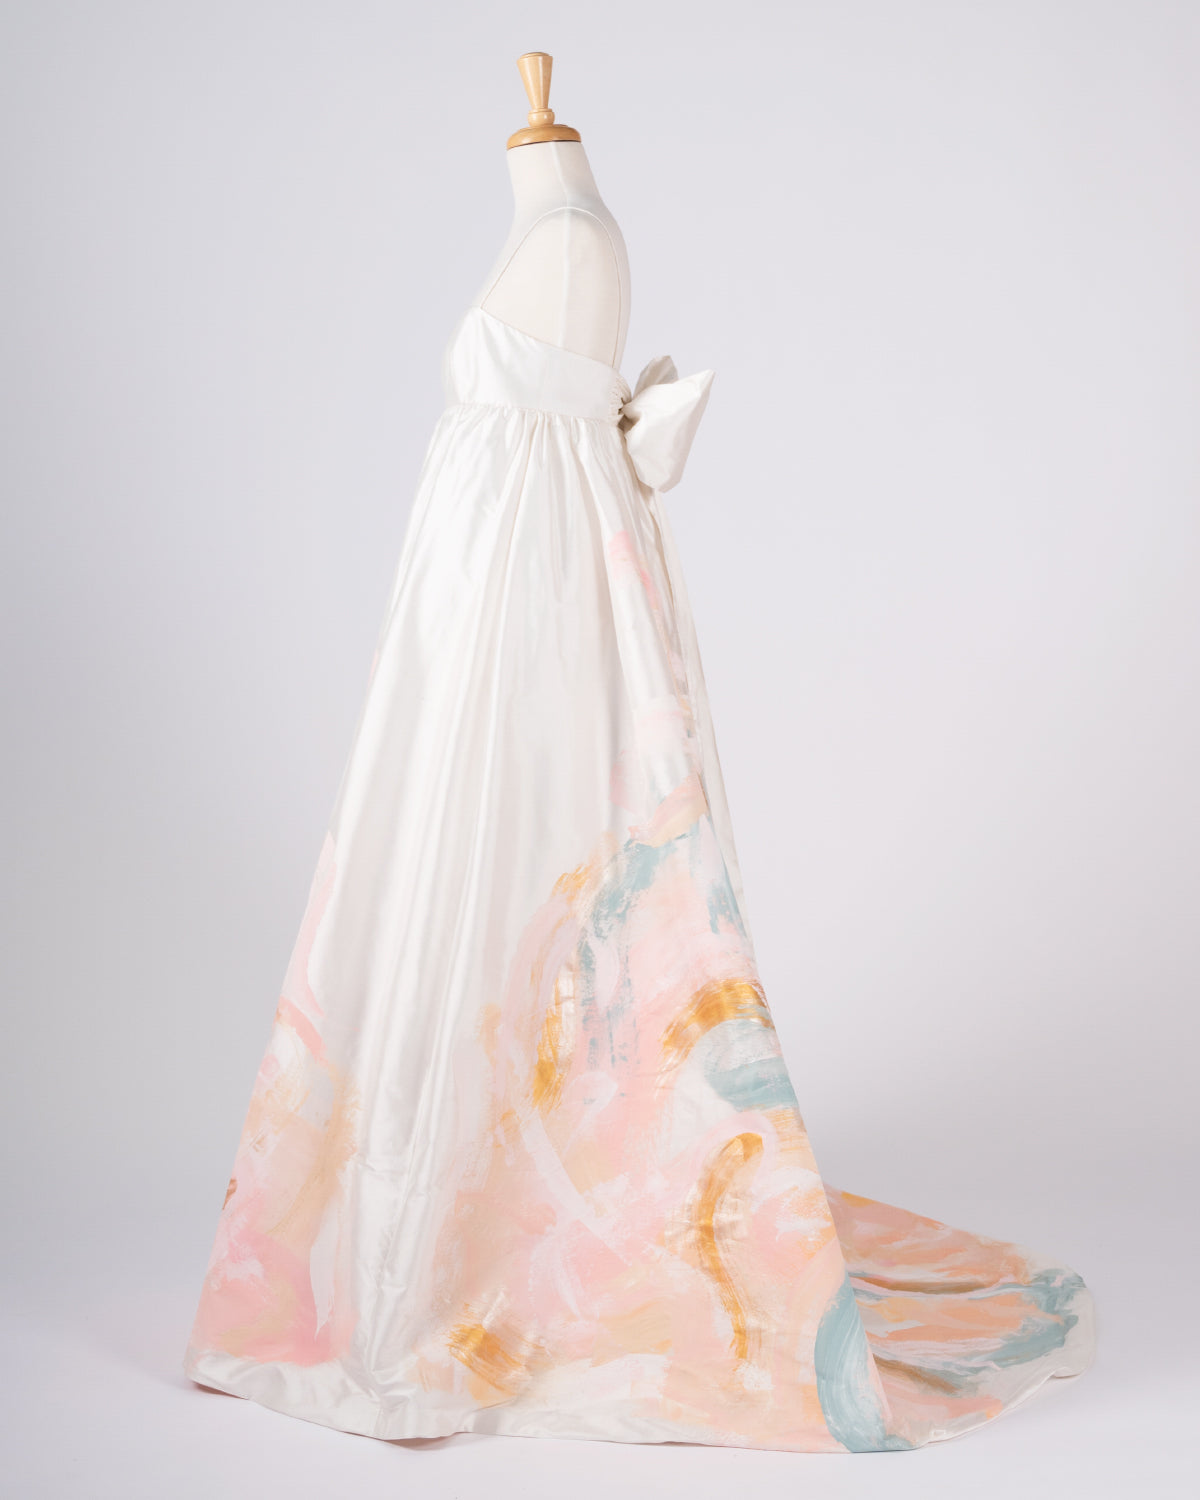 Magnolia Dress - Size 6 - Tiff Manuell